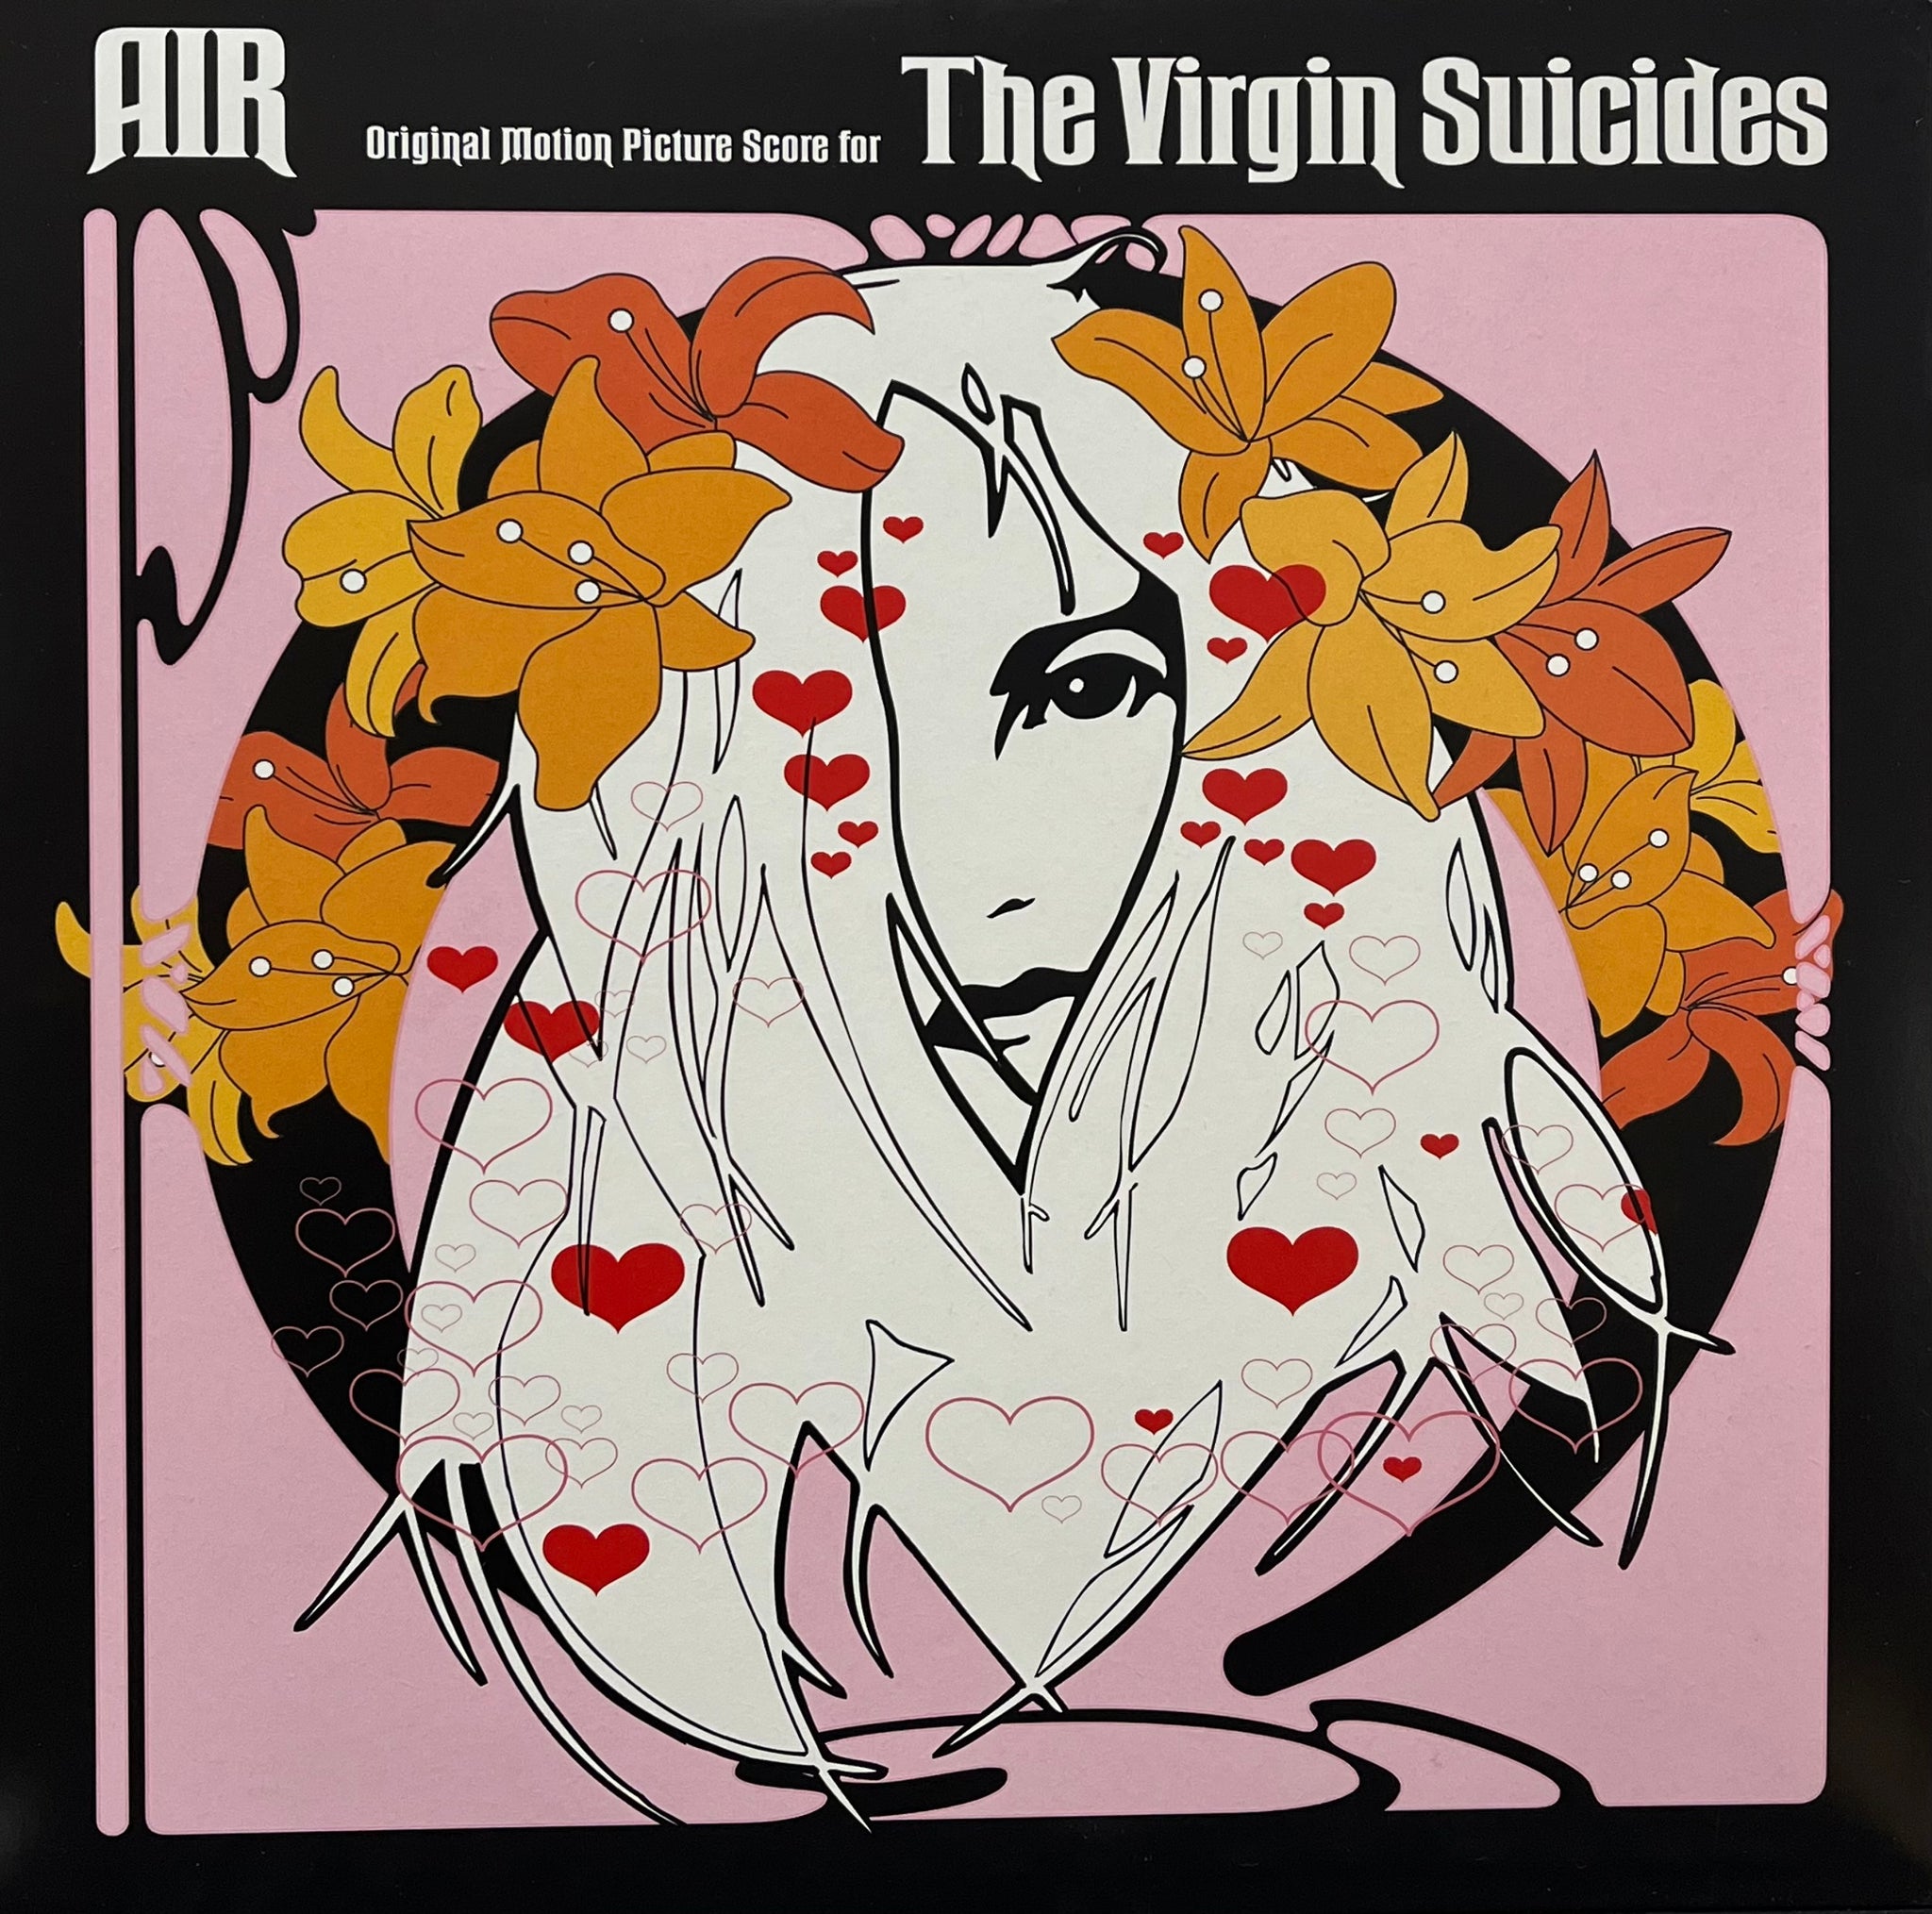 The virgin suicides フォトブック ソフィアコッポラ - アート